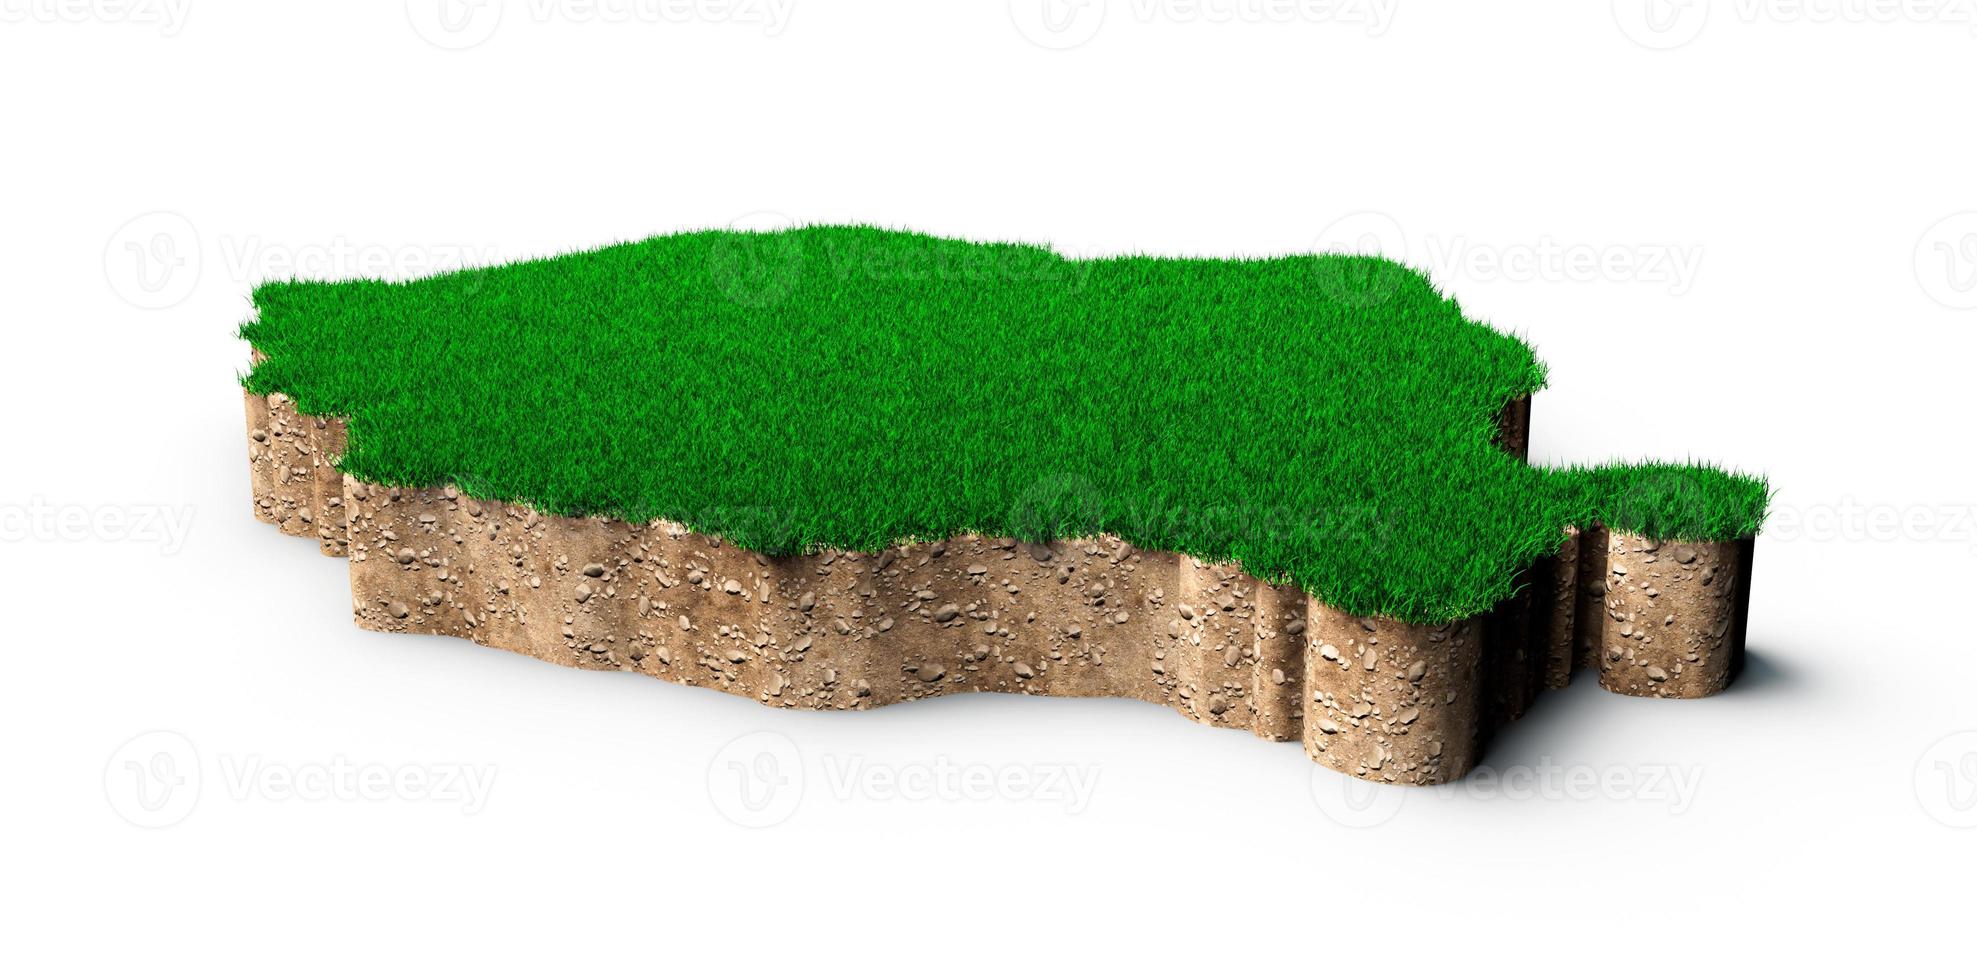 rumänien karta jord mark geologi tvärsnitt med grönt gräs och sten marken textur 3d illustration foto